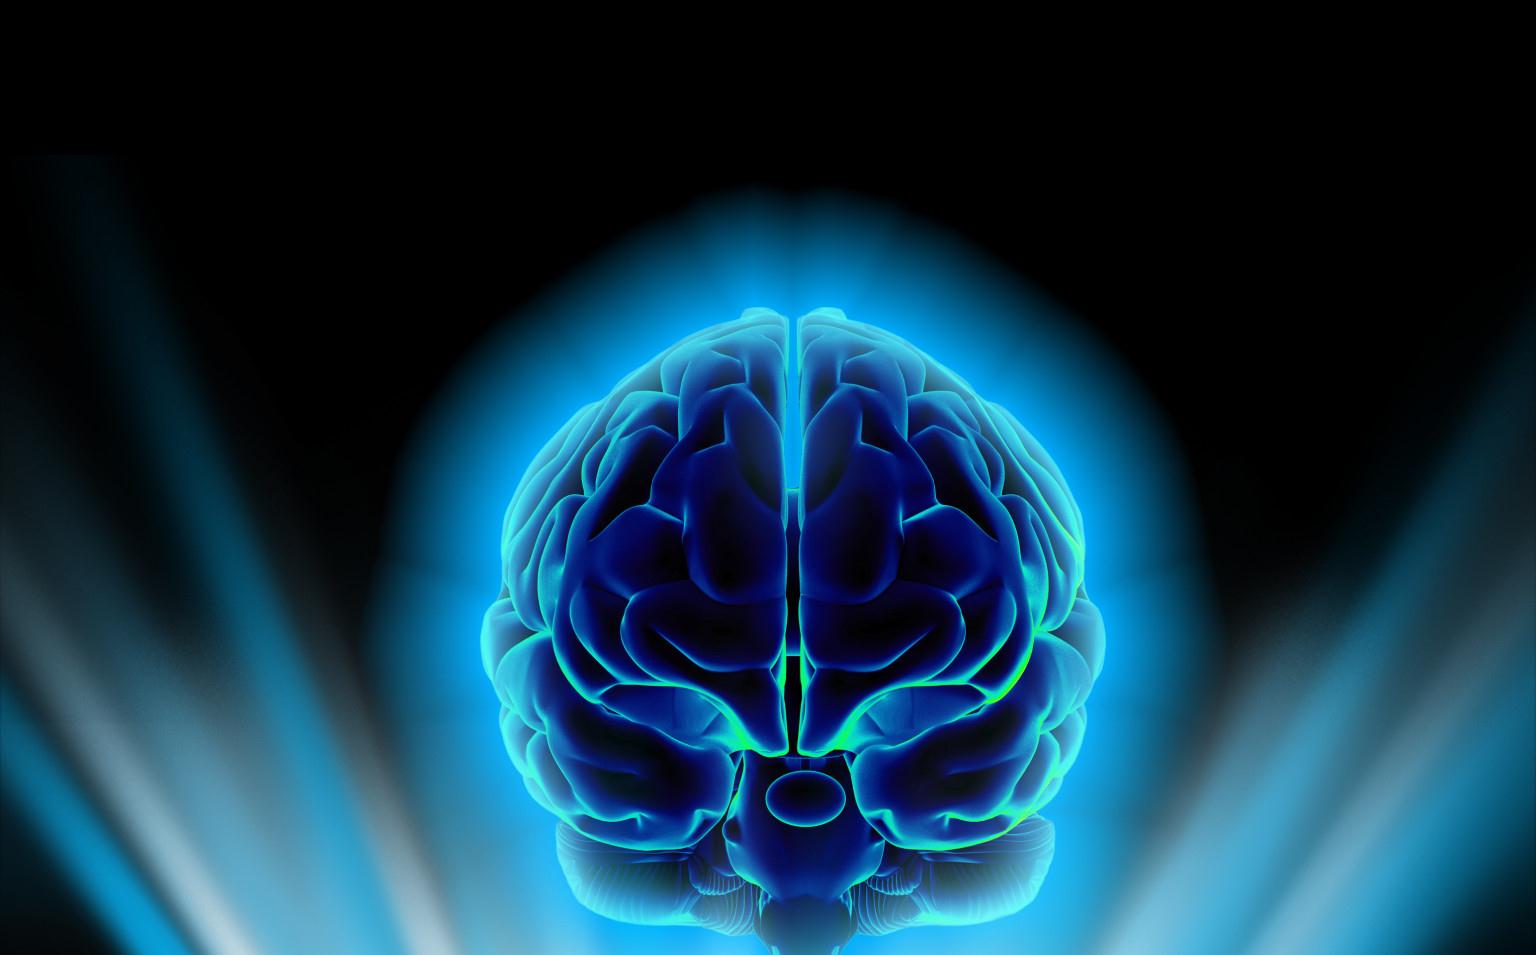 System 1: Fast Unconscious Emotional Neden Nörobilim? Beynin iki işletim sistemi vardır. Prof. Dr.